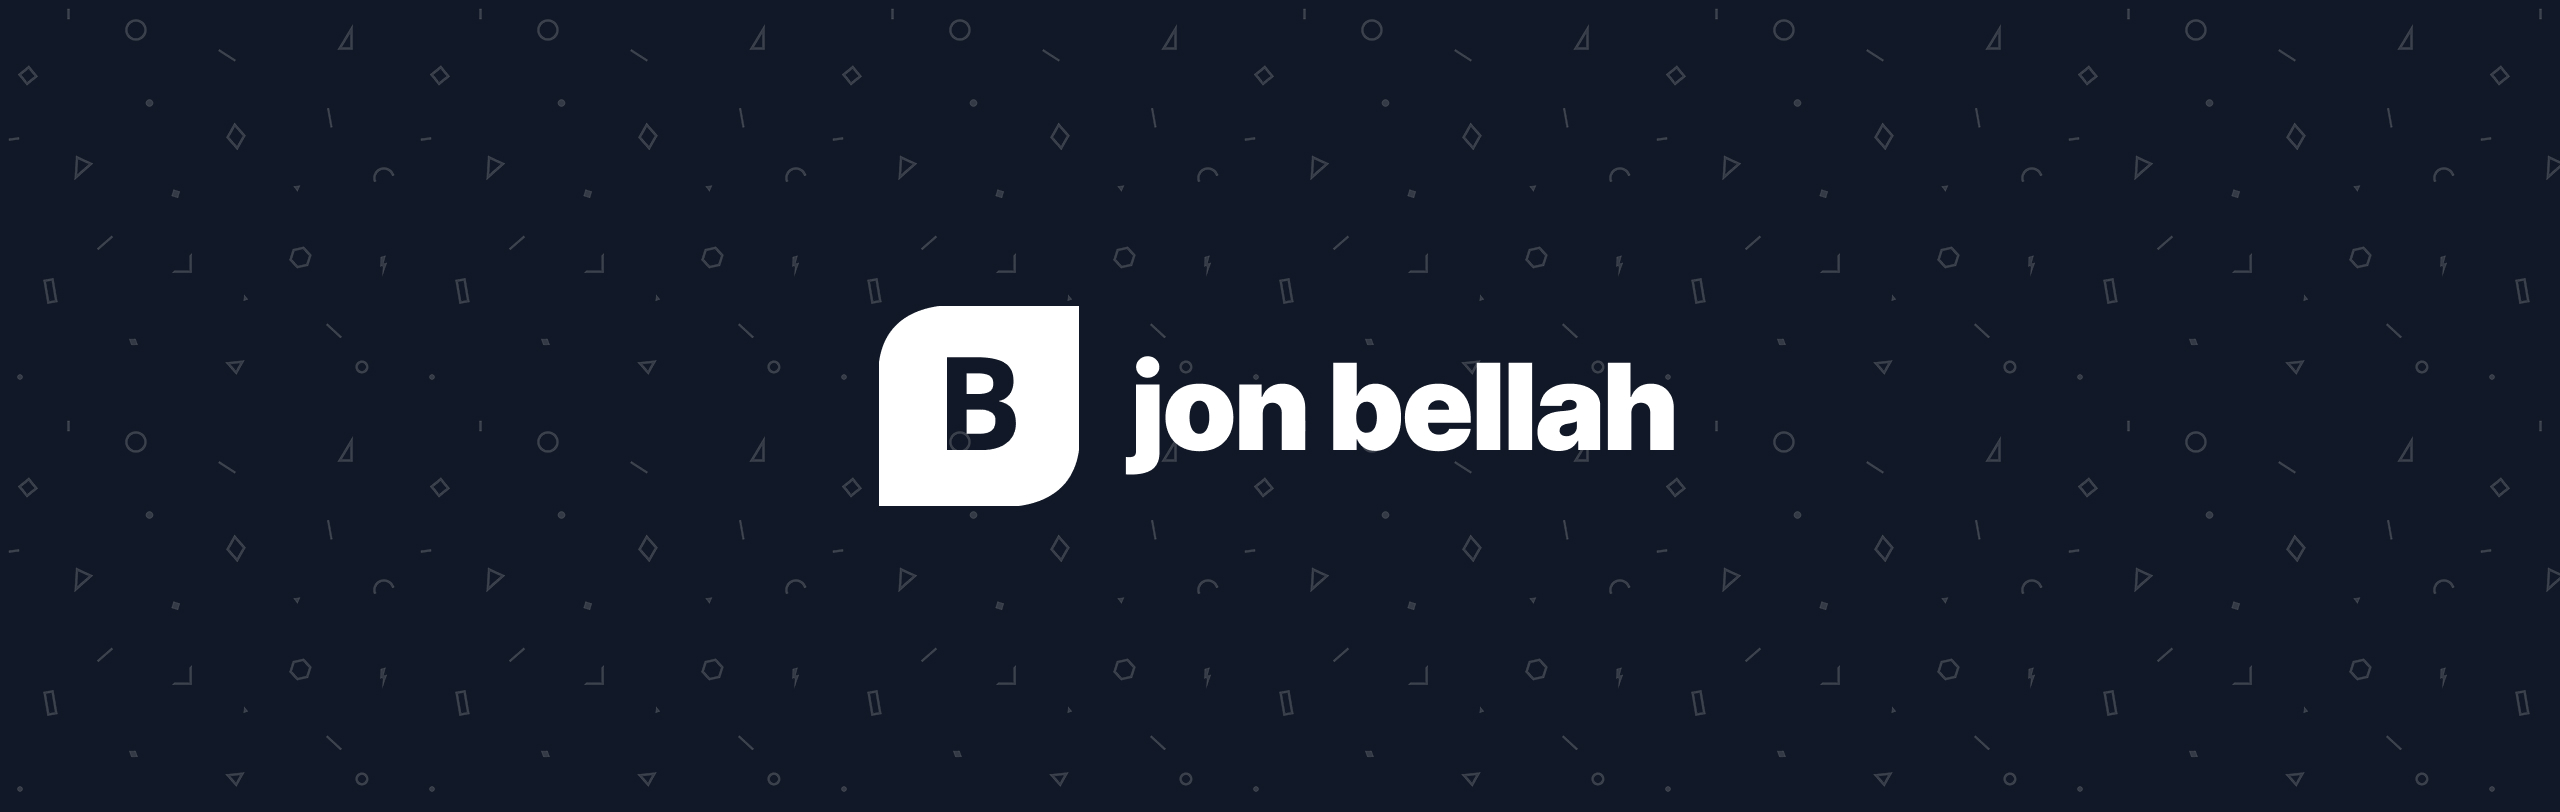 Jon Bellah banner